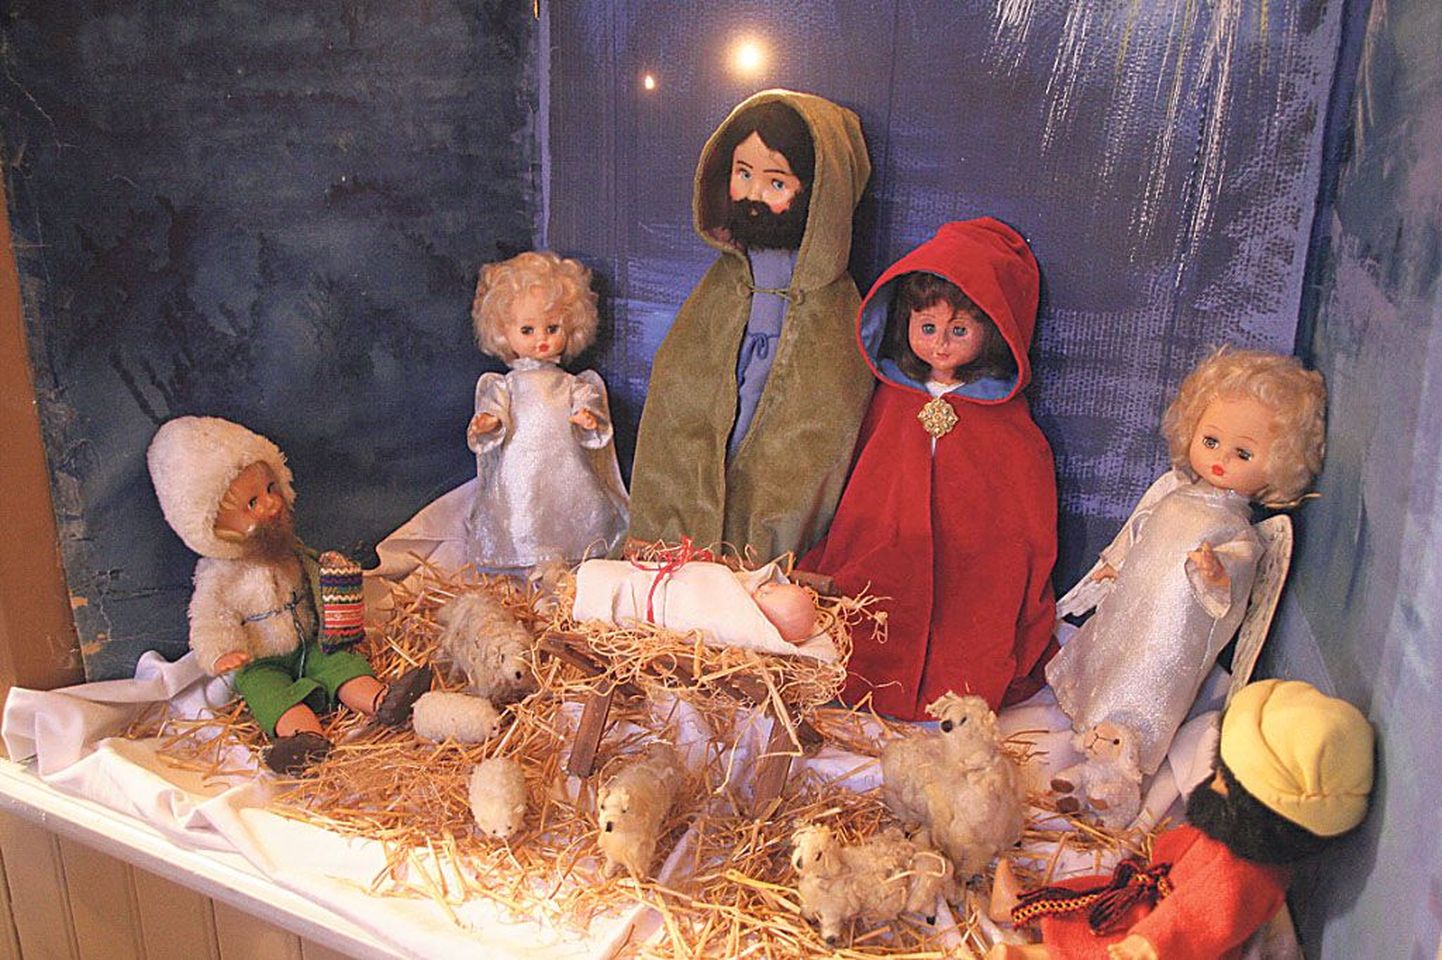 Eliisabeti kirik on ehitud jõulupäraseks. Lastele on kujundatud nukkudest stseen jeesuslapse sünnist.